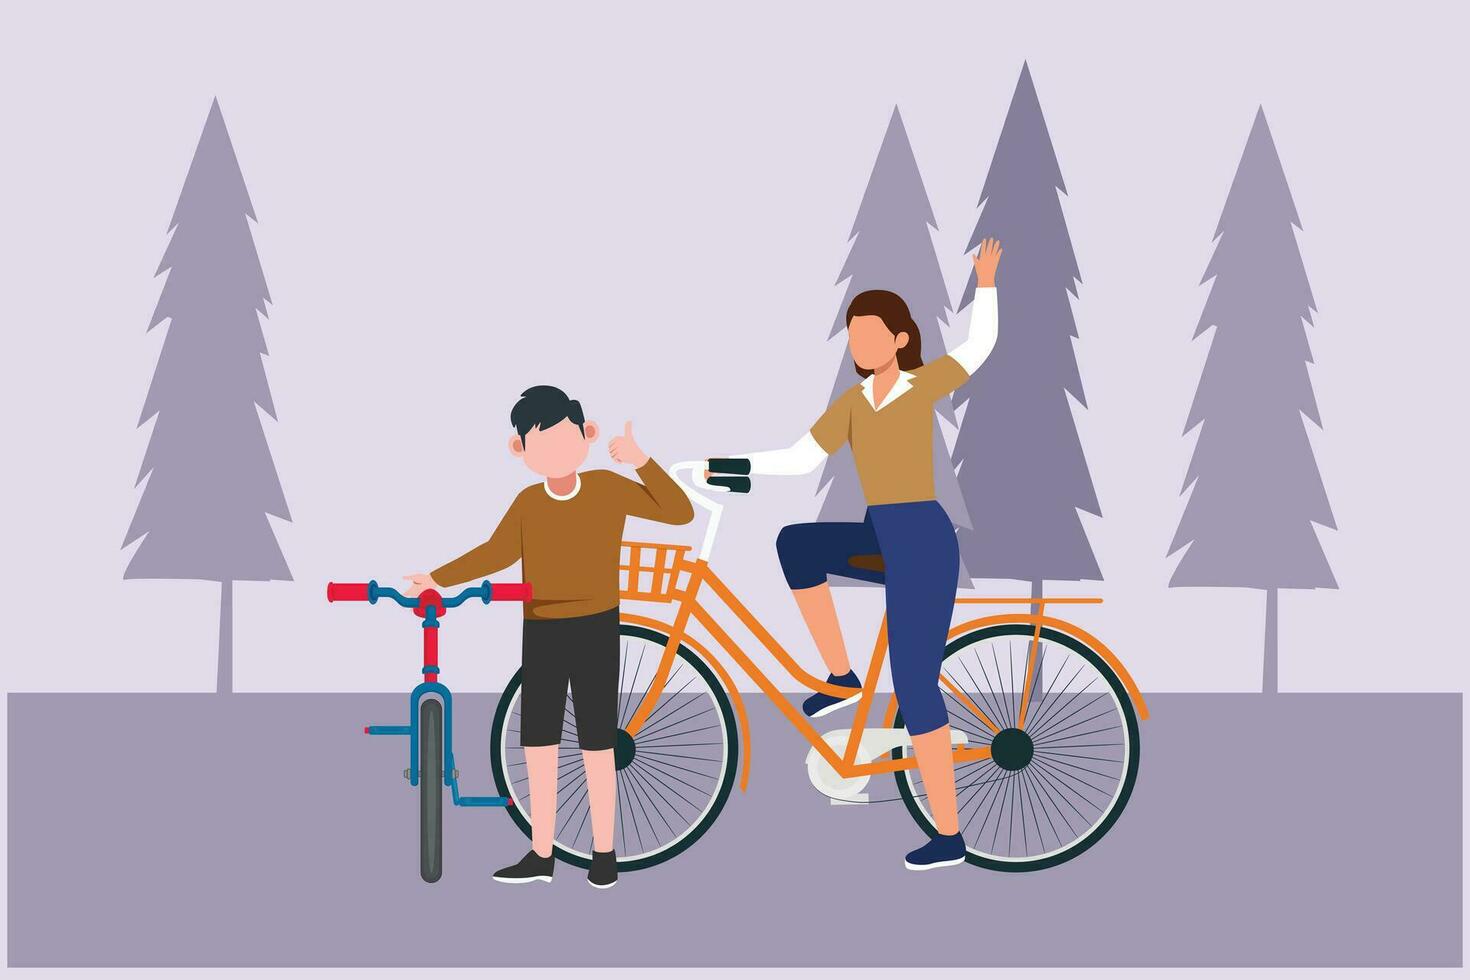 glücklich Eltern mit ihr Kind Reiten Fahrrad zusammen. draussen Freizeit Aktivitäten Konzept. farbig eben Vektor Illustration isoliert.